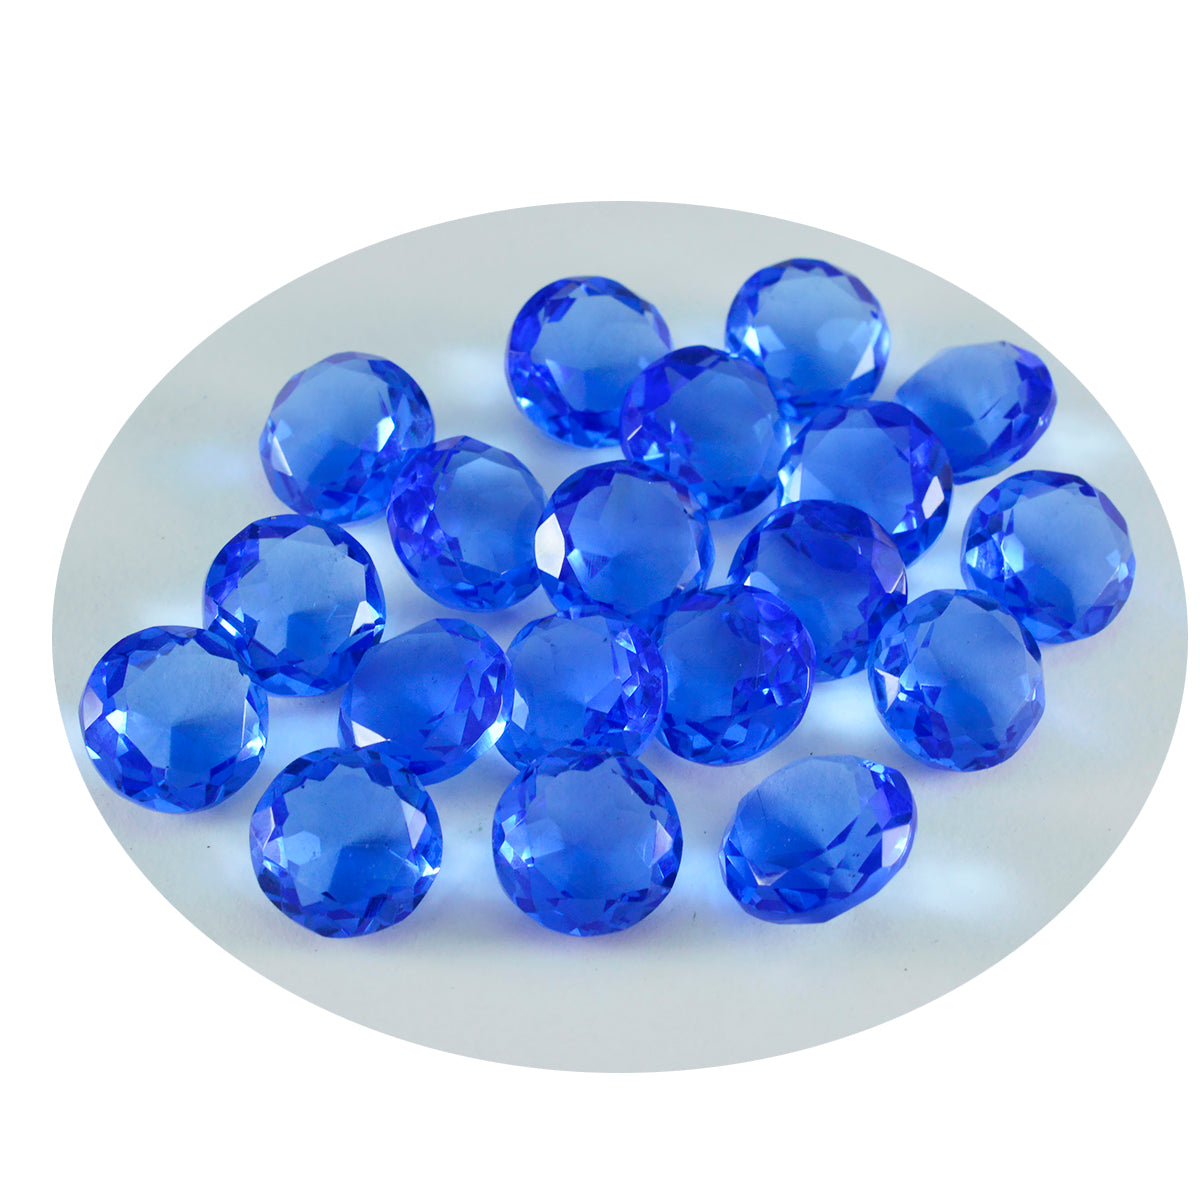 Riyogems 1 Stück blauer Saphir, CZ, facettiert, 6 x 6 mm, runde Form, süßer Qualitätsedelstein